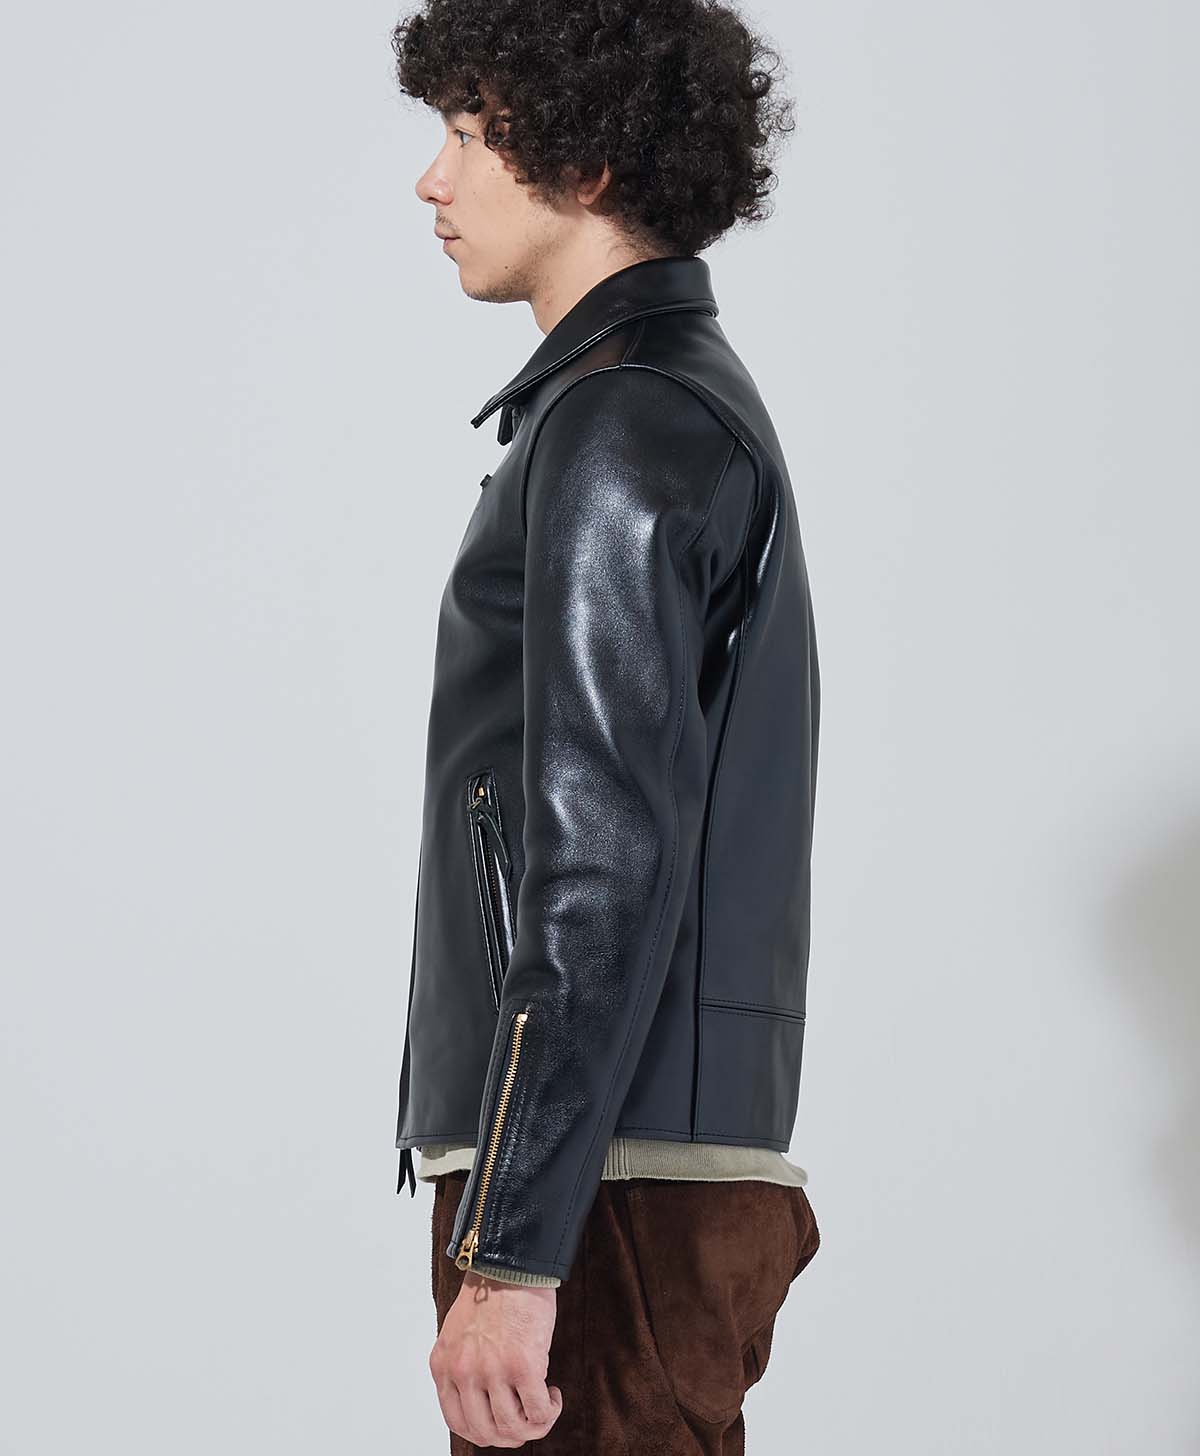 皮夾克皮革雙層夾克| Kadoya 官方網上商店| AVDJ-STD / 黑色